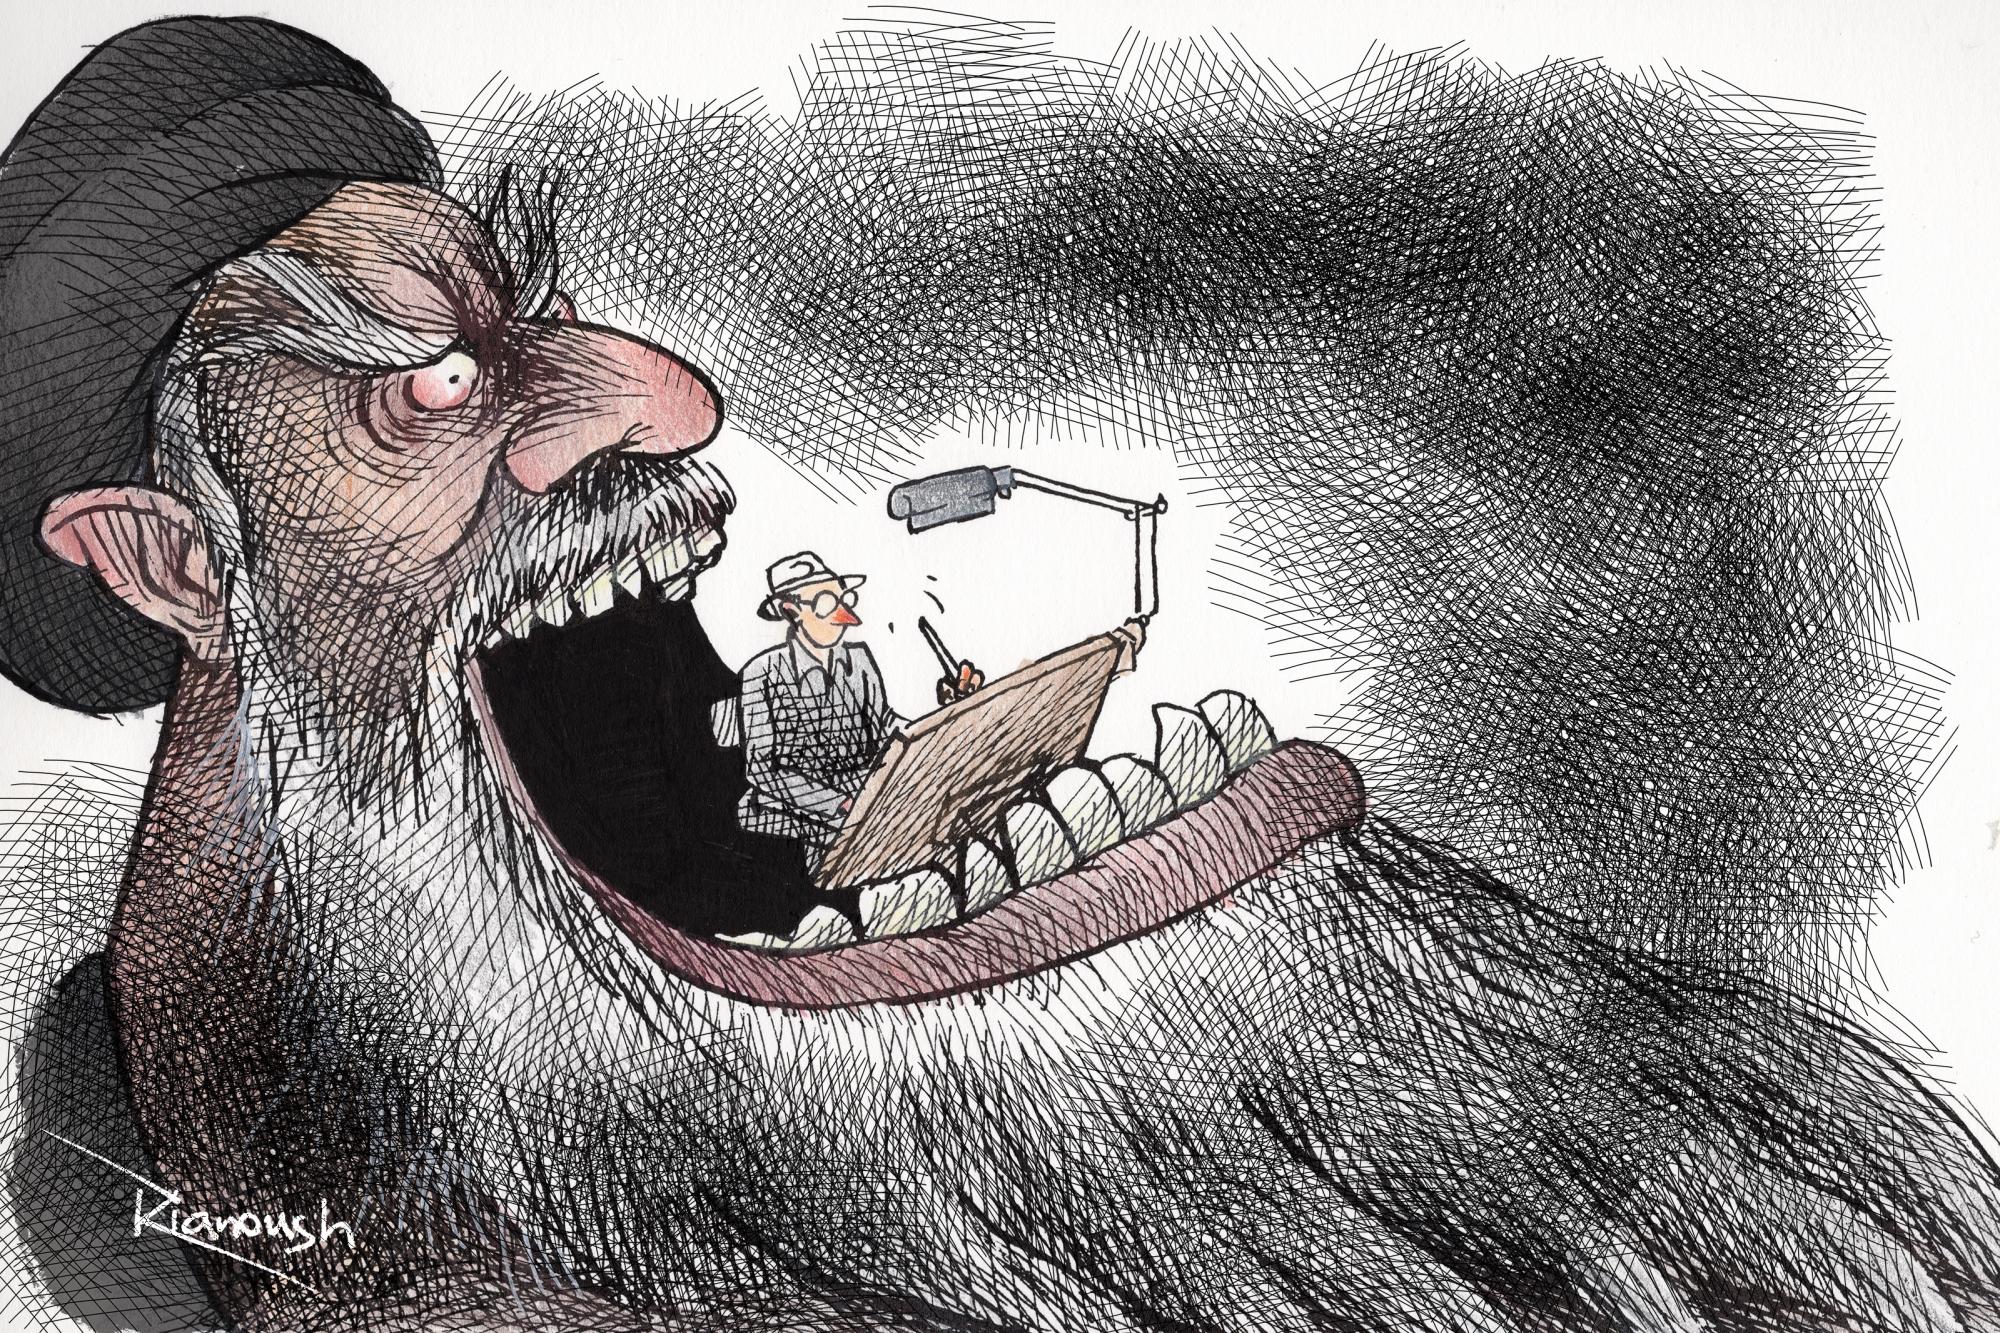 Kianoush Iran dessiner vs la dictature